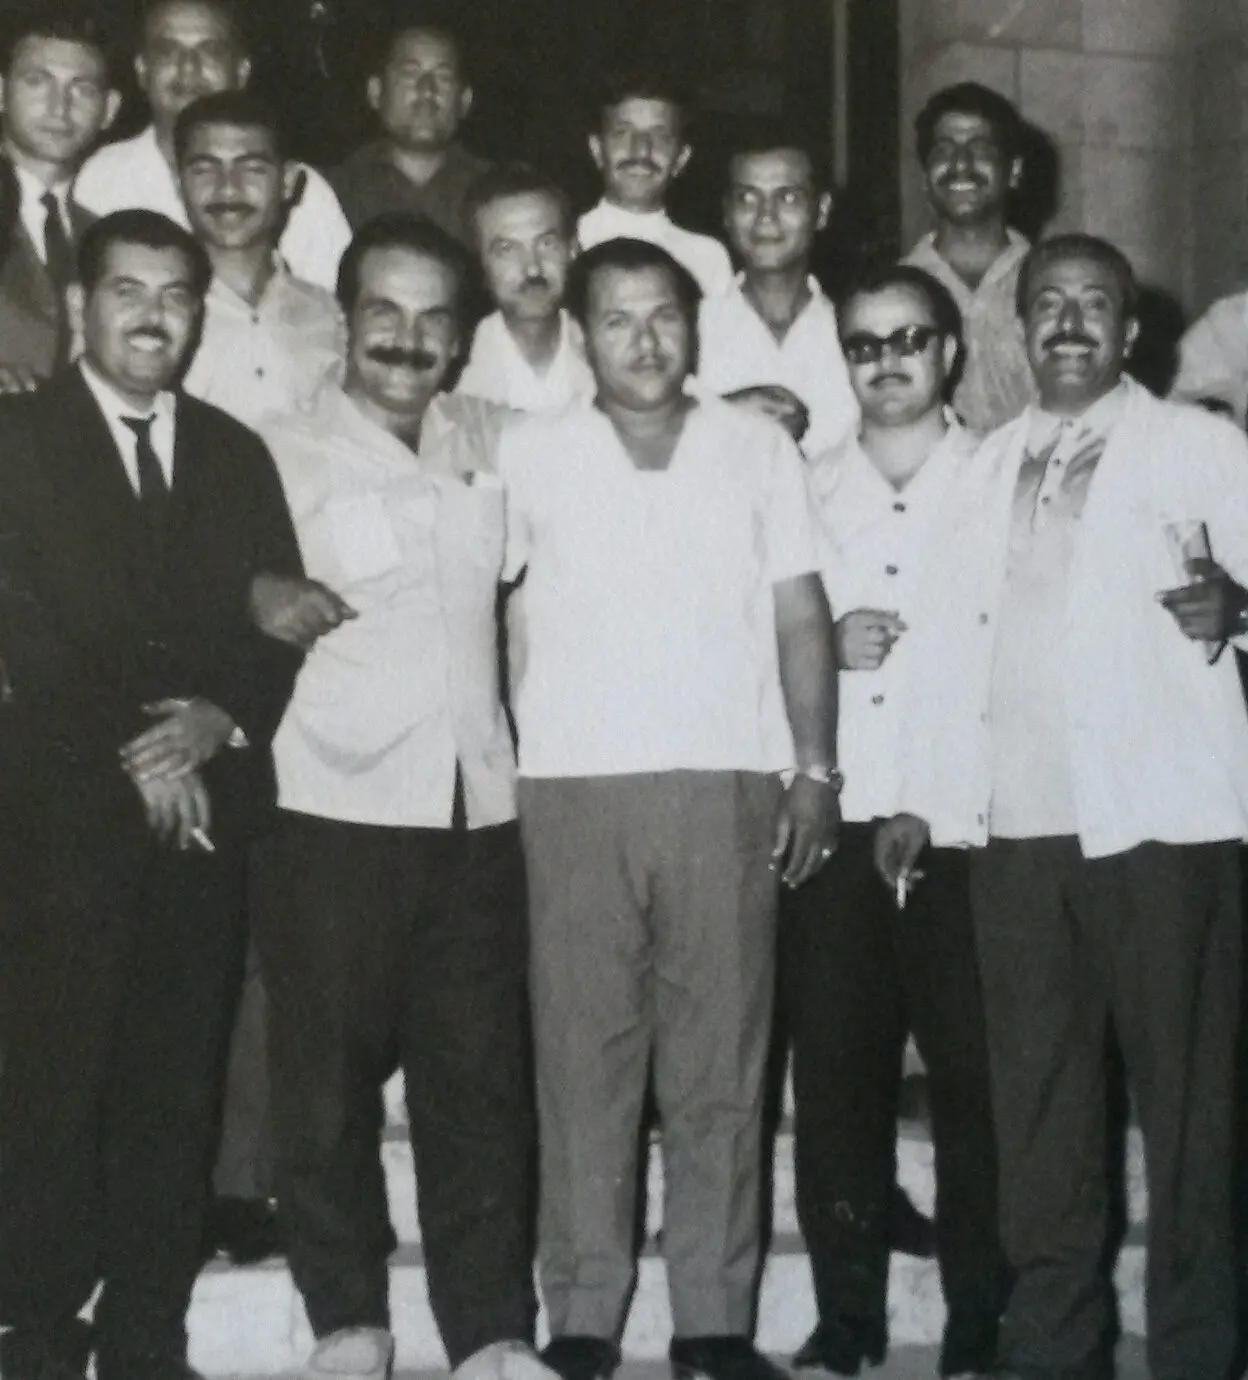 مع رفاقه في اتحاد عمال فلسطين - المرحوم ابراهيم البلعوس في اقصى اليمين والأخ فتحي الراغب في اقصى اليسار